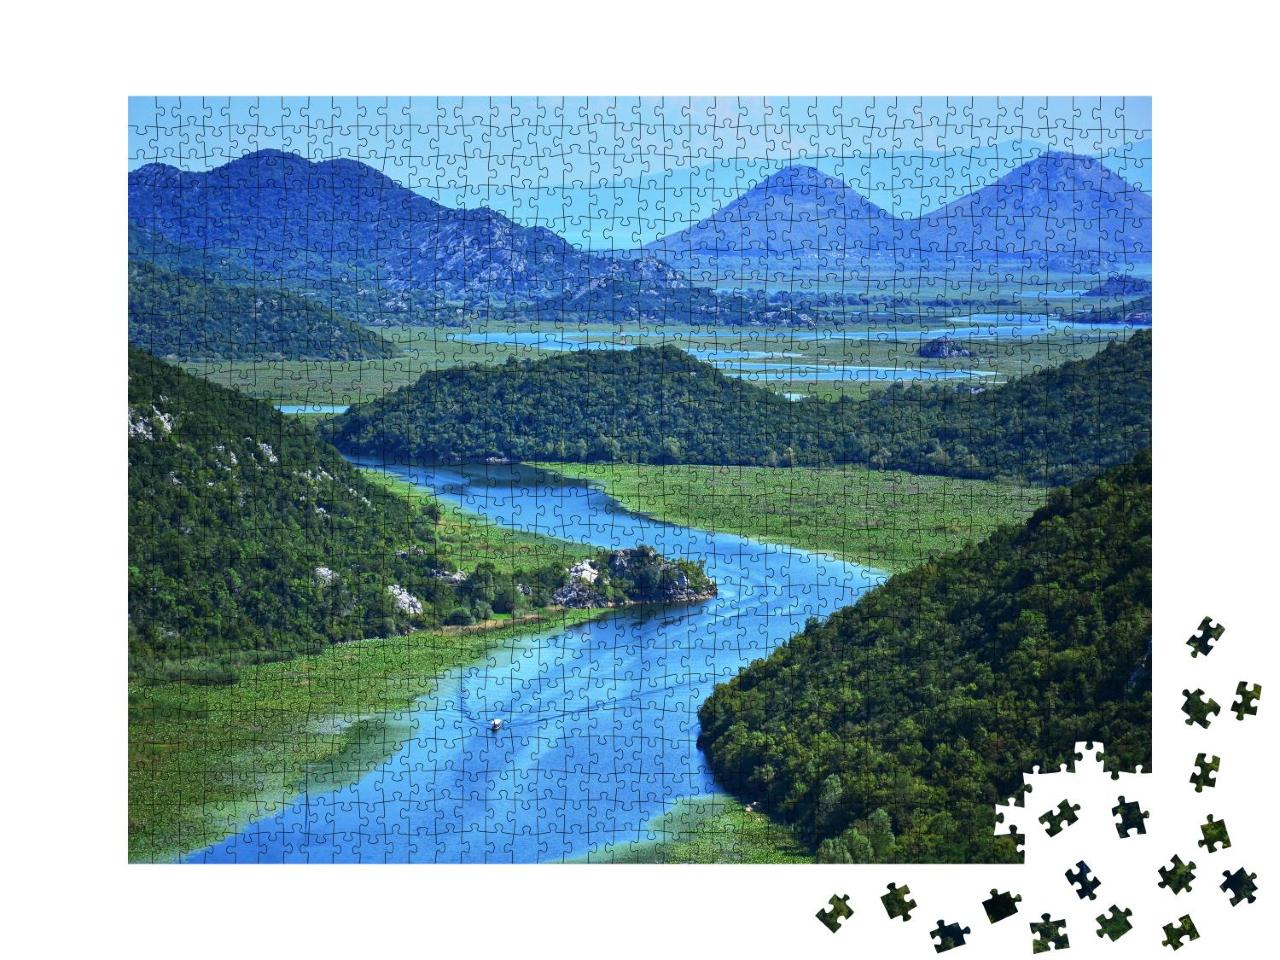 Puzzle 1000 Teile „Panorama eines gewundenen Flusses, Weitblick, Aussicht“